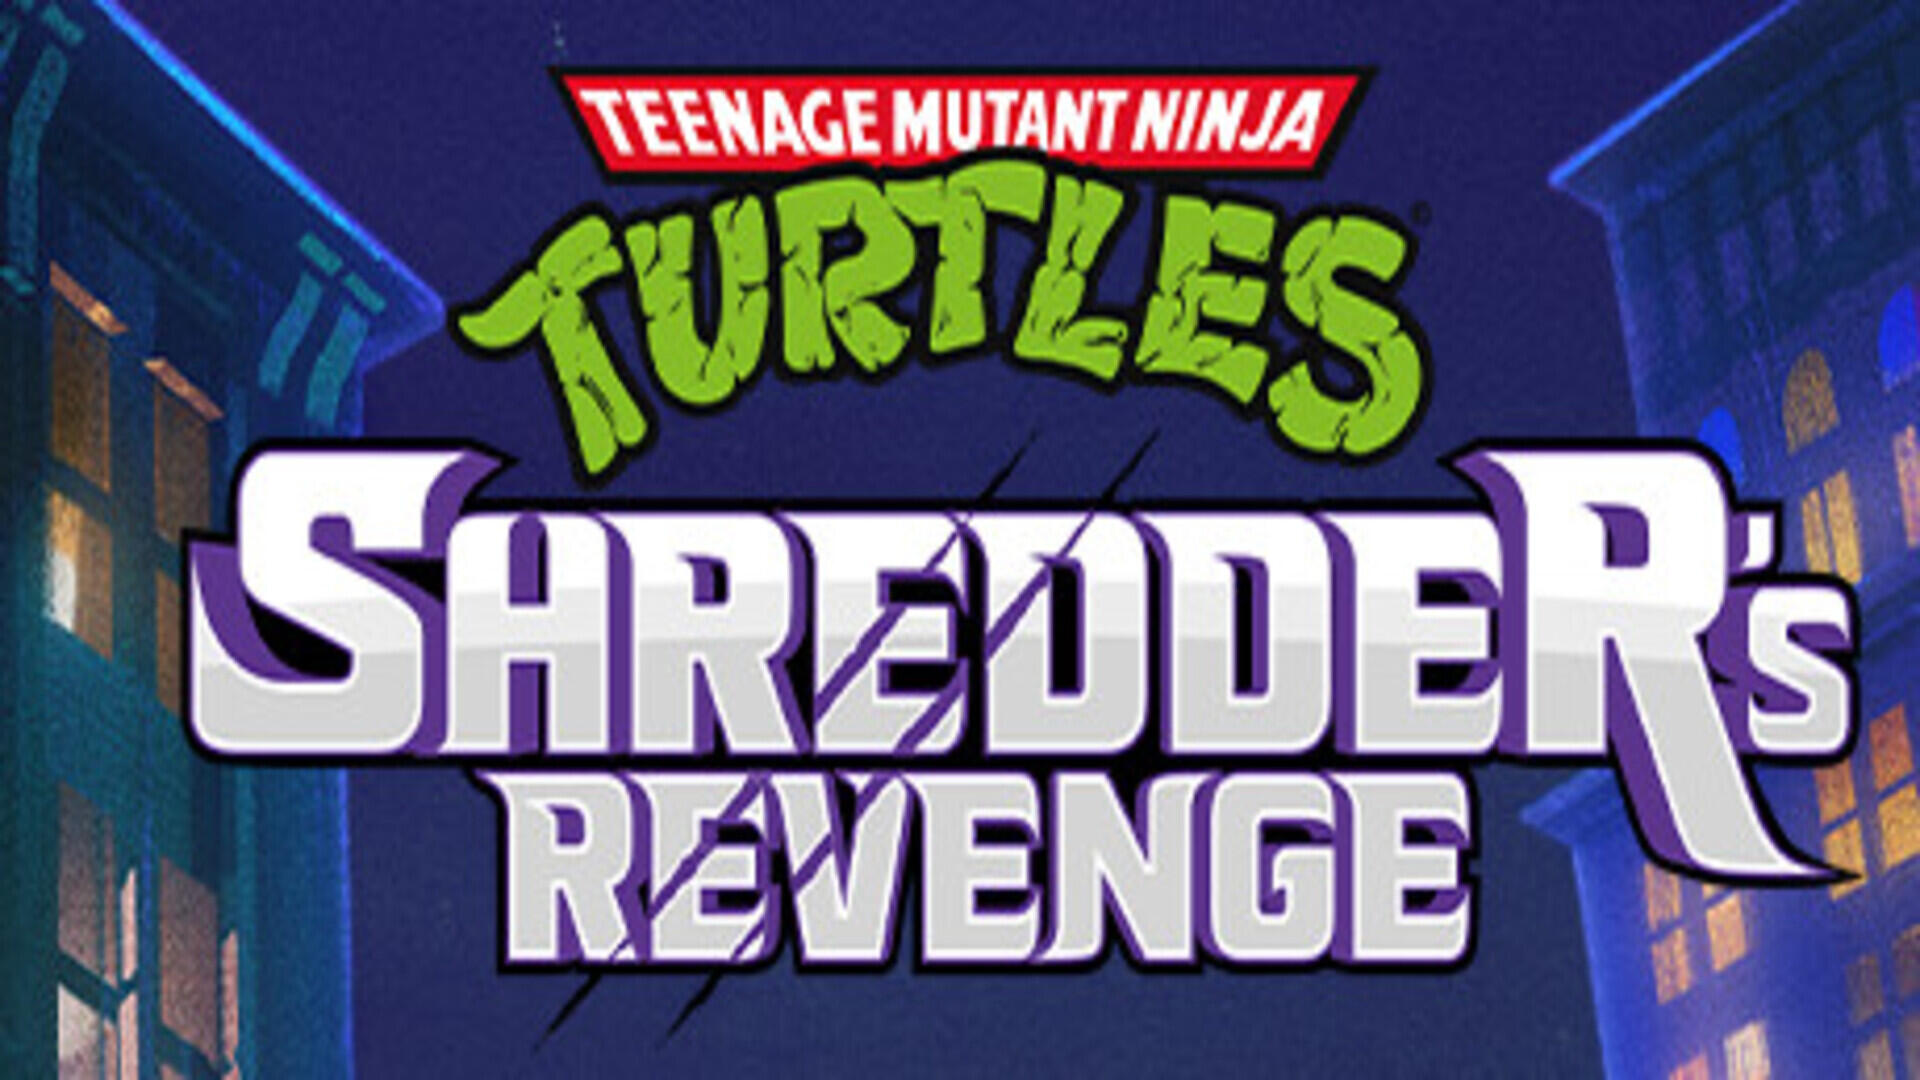 Teenage Mutant Ninja Turtles: Shredder’s Revenge – Free Download ( v1.0.0.311 )